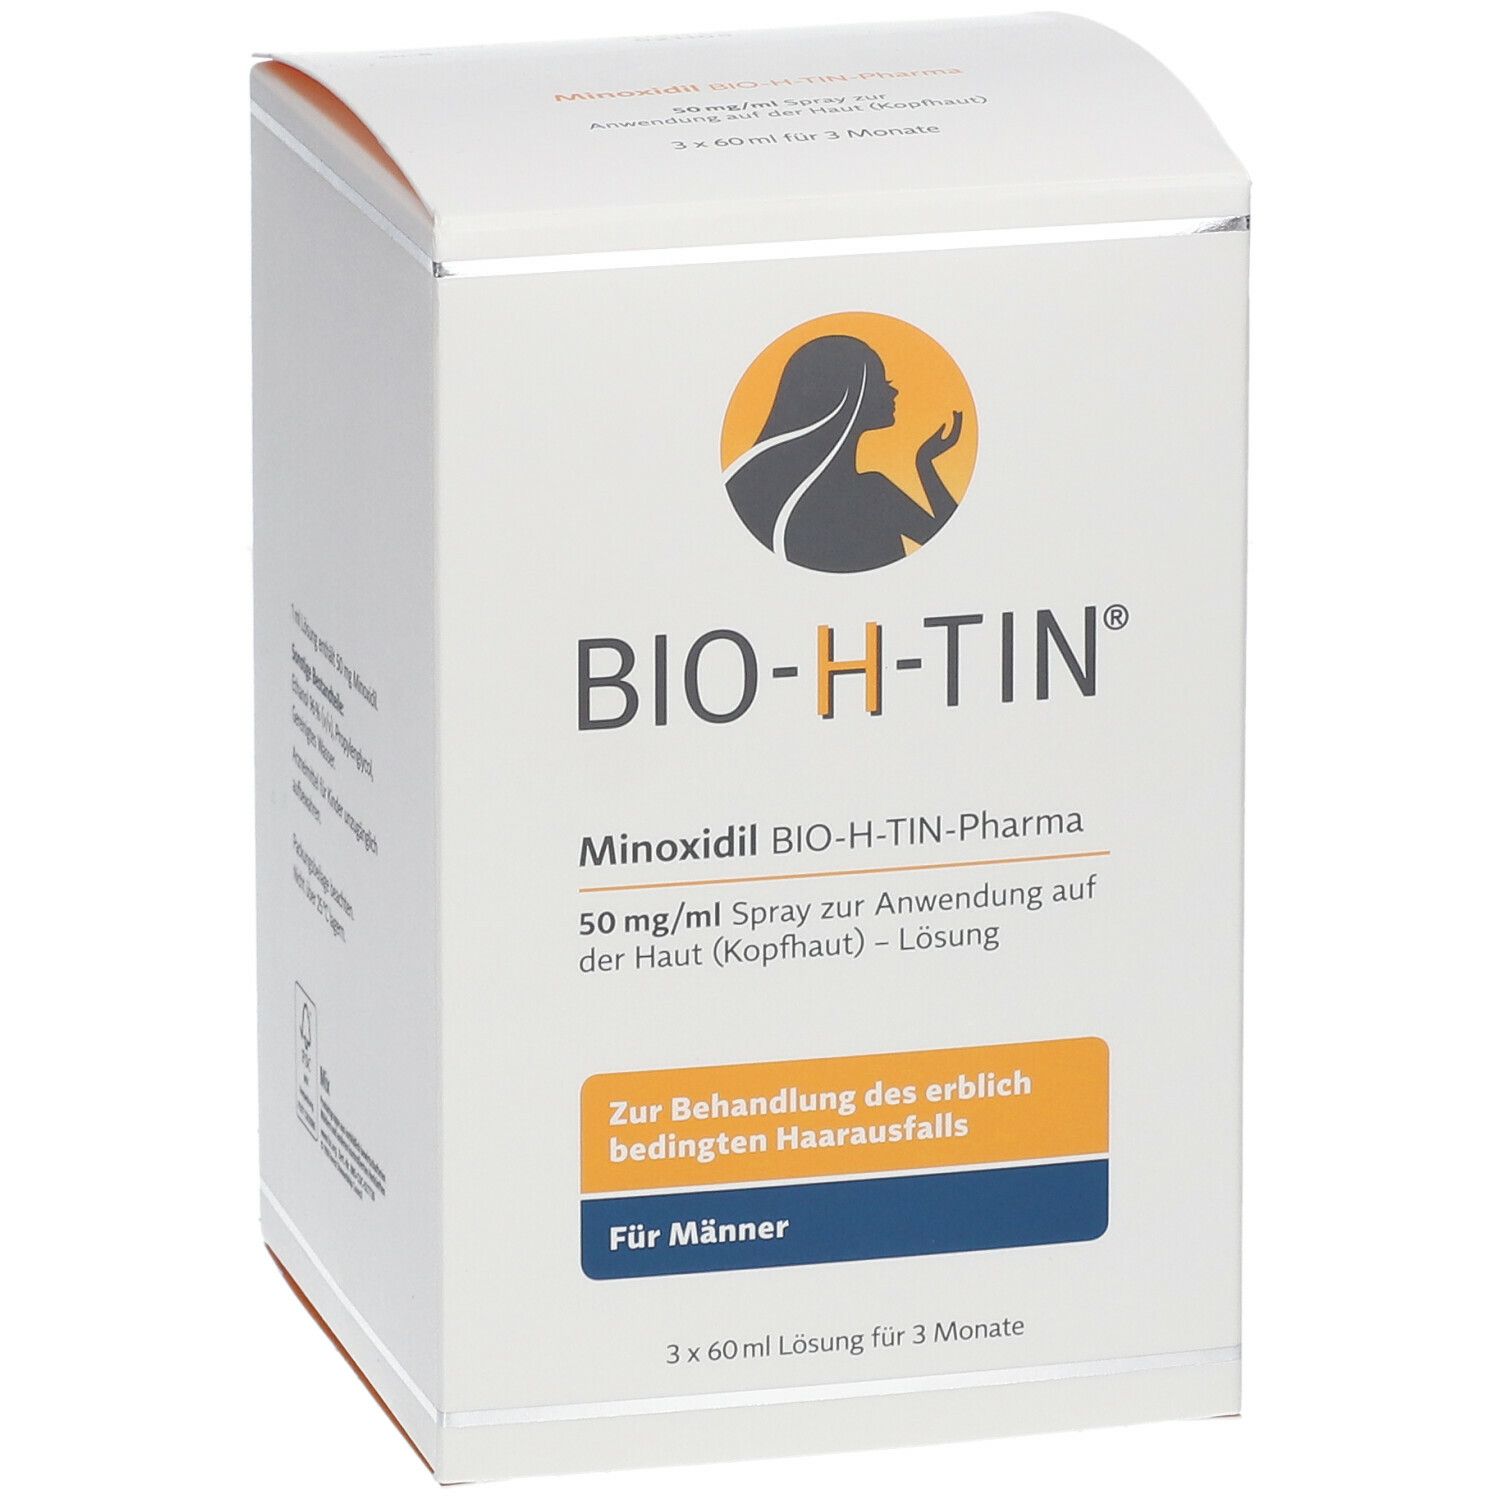 Minoxidil BIO-H-TIN 50 mg/ml